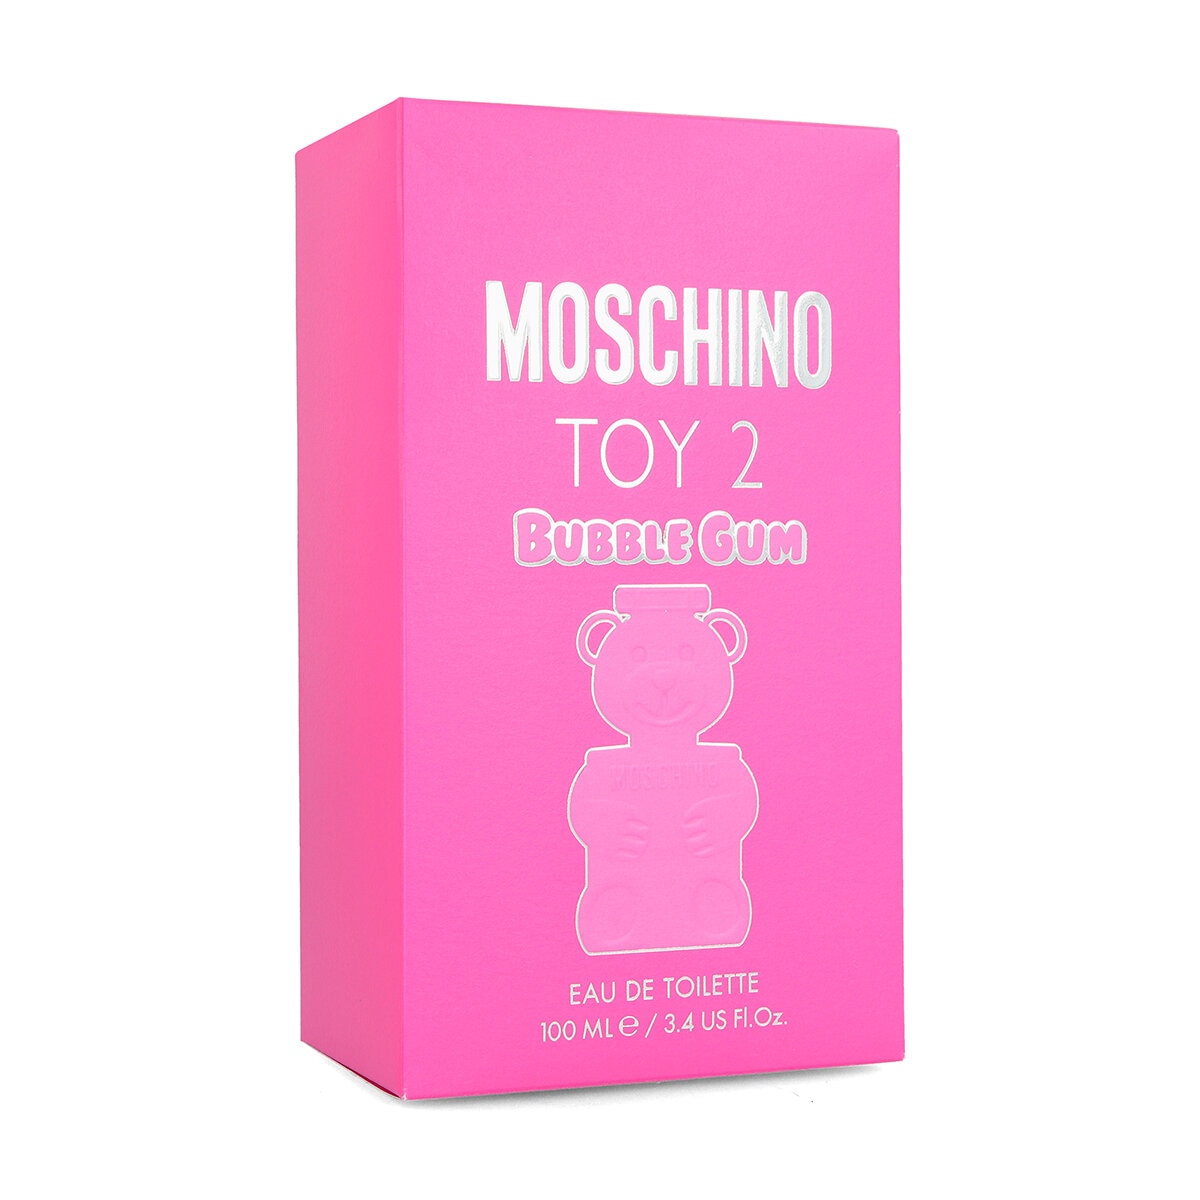 Moschino Toy 2 Bubblegum 100 ml